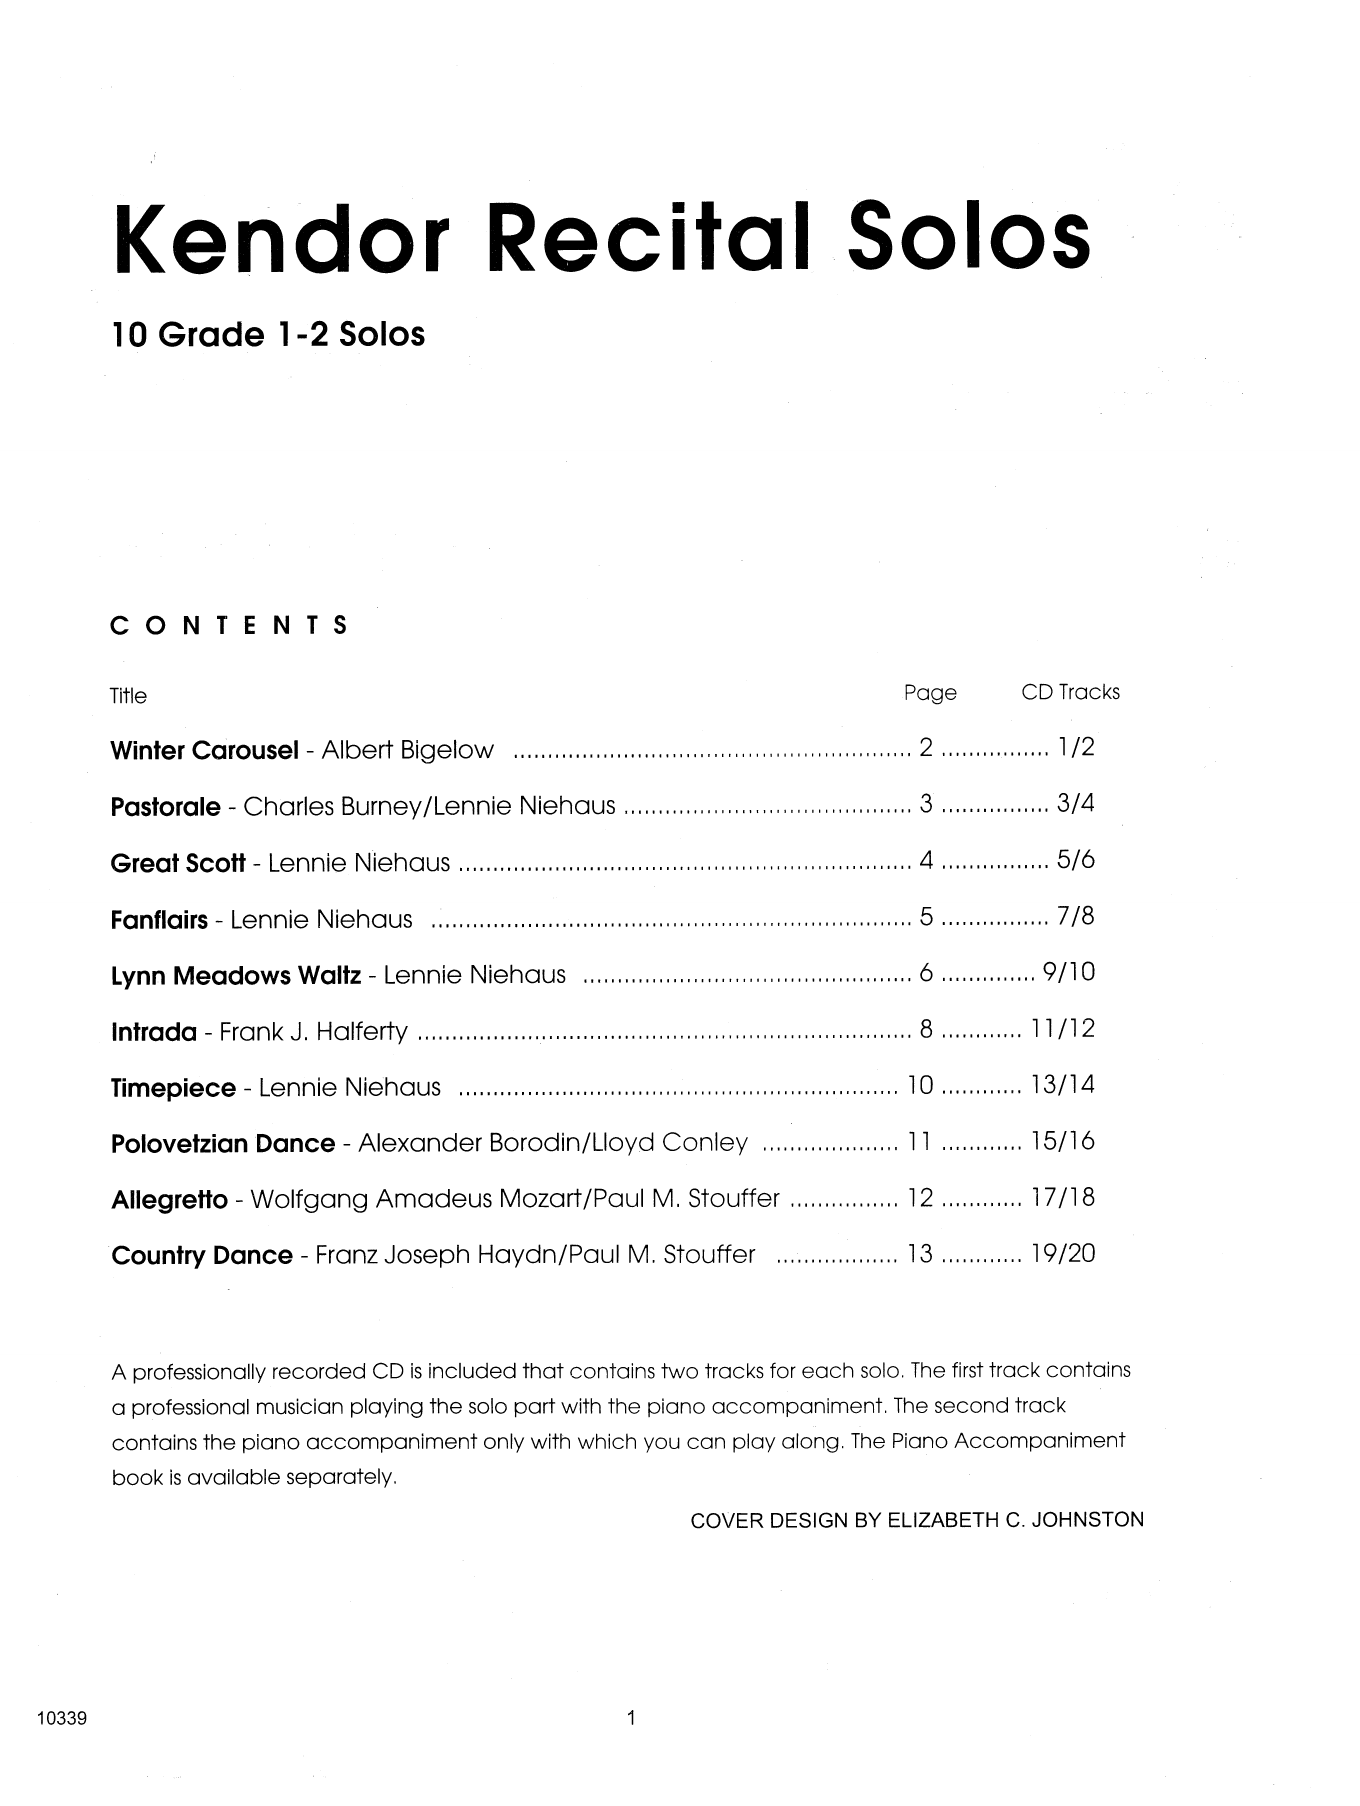 Download Various Kendor Recital Solos - Bb Trumpet - Sol Sheet Music